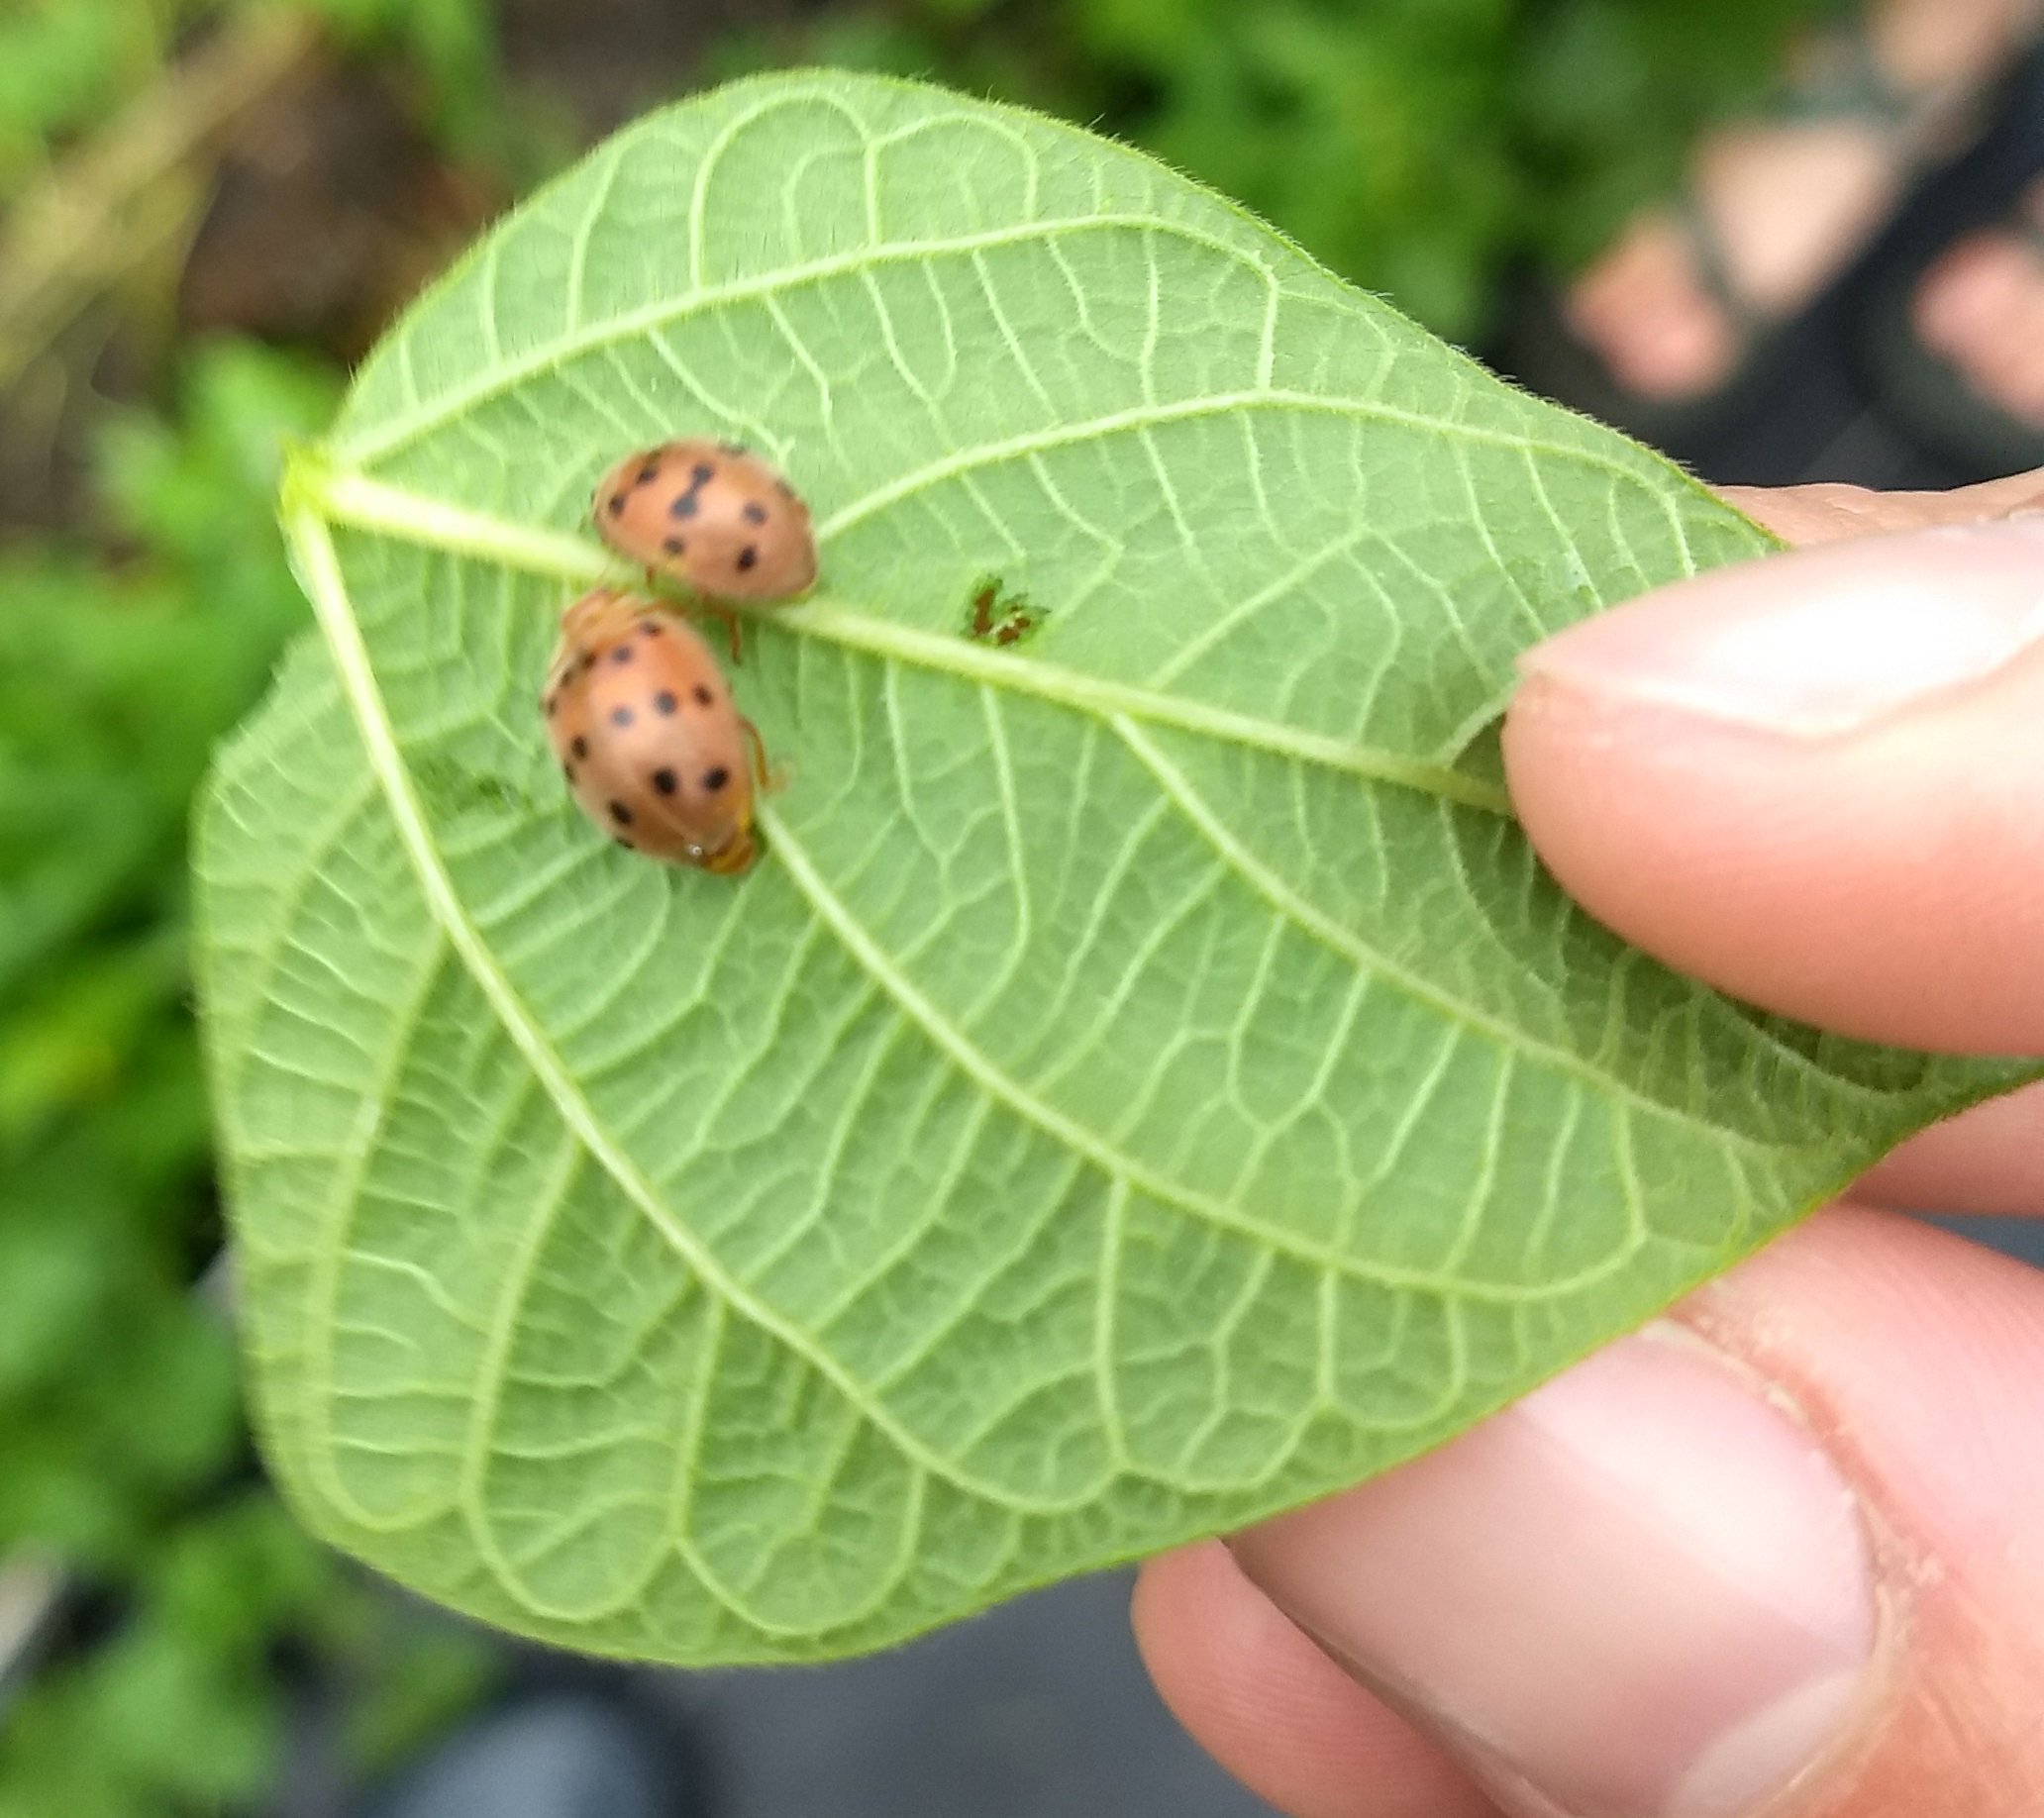 Two beetles on a leaf.